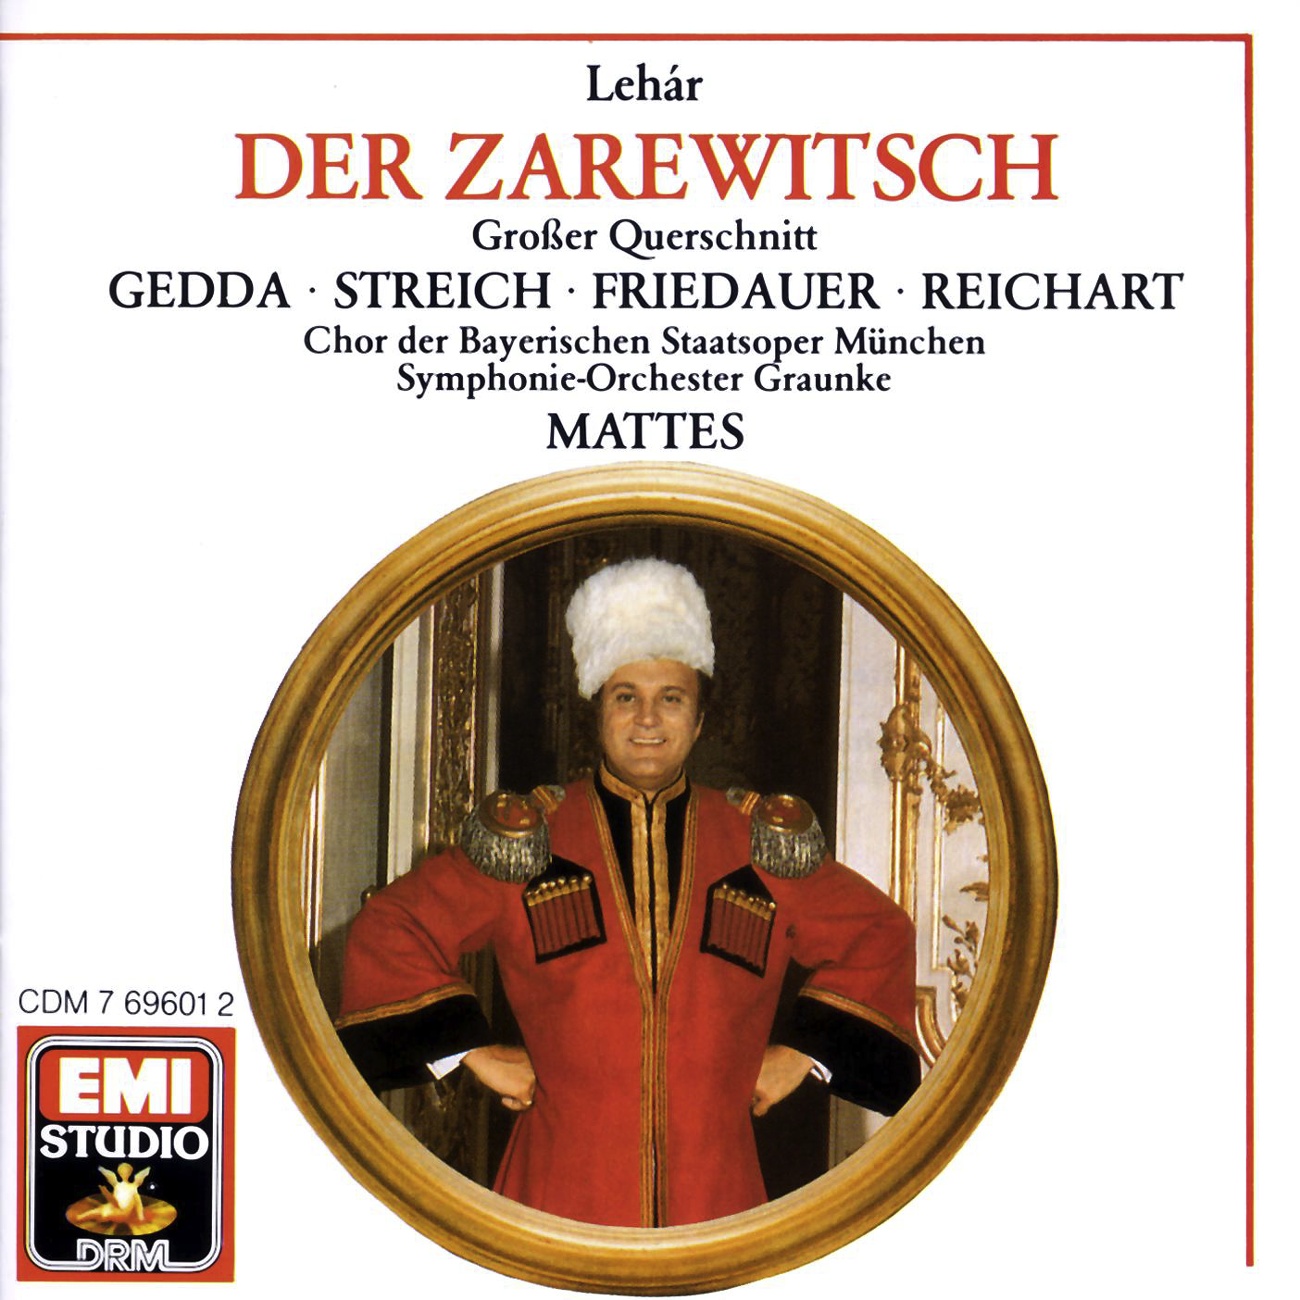 Der Zarewitsch  Highlights 1988 Digital Remaster, Erster Akt: Dich nur allein nenne ich mein  Schaukle, Liebchen, schaukle